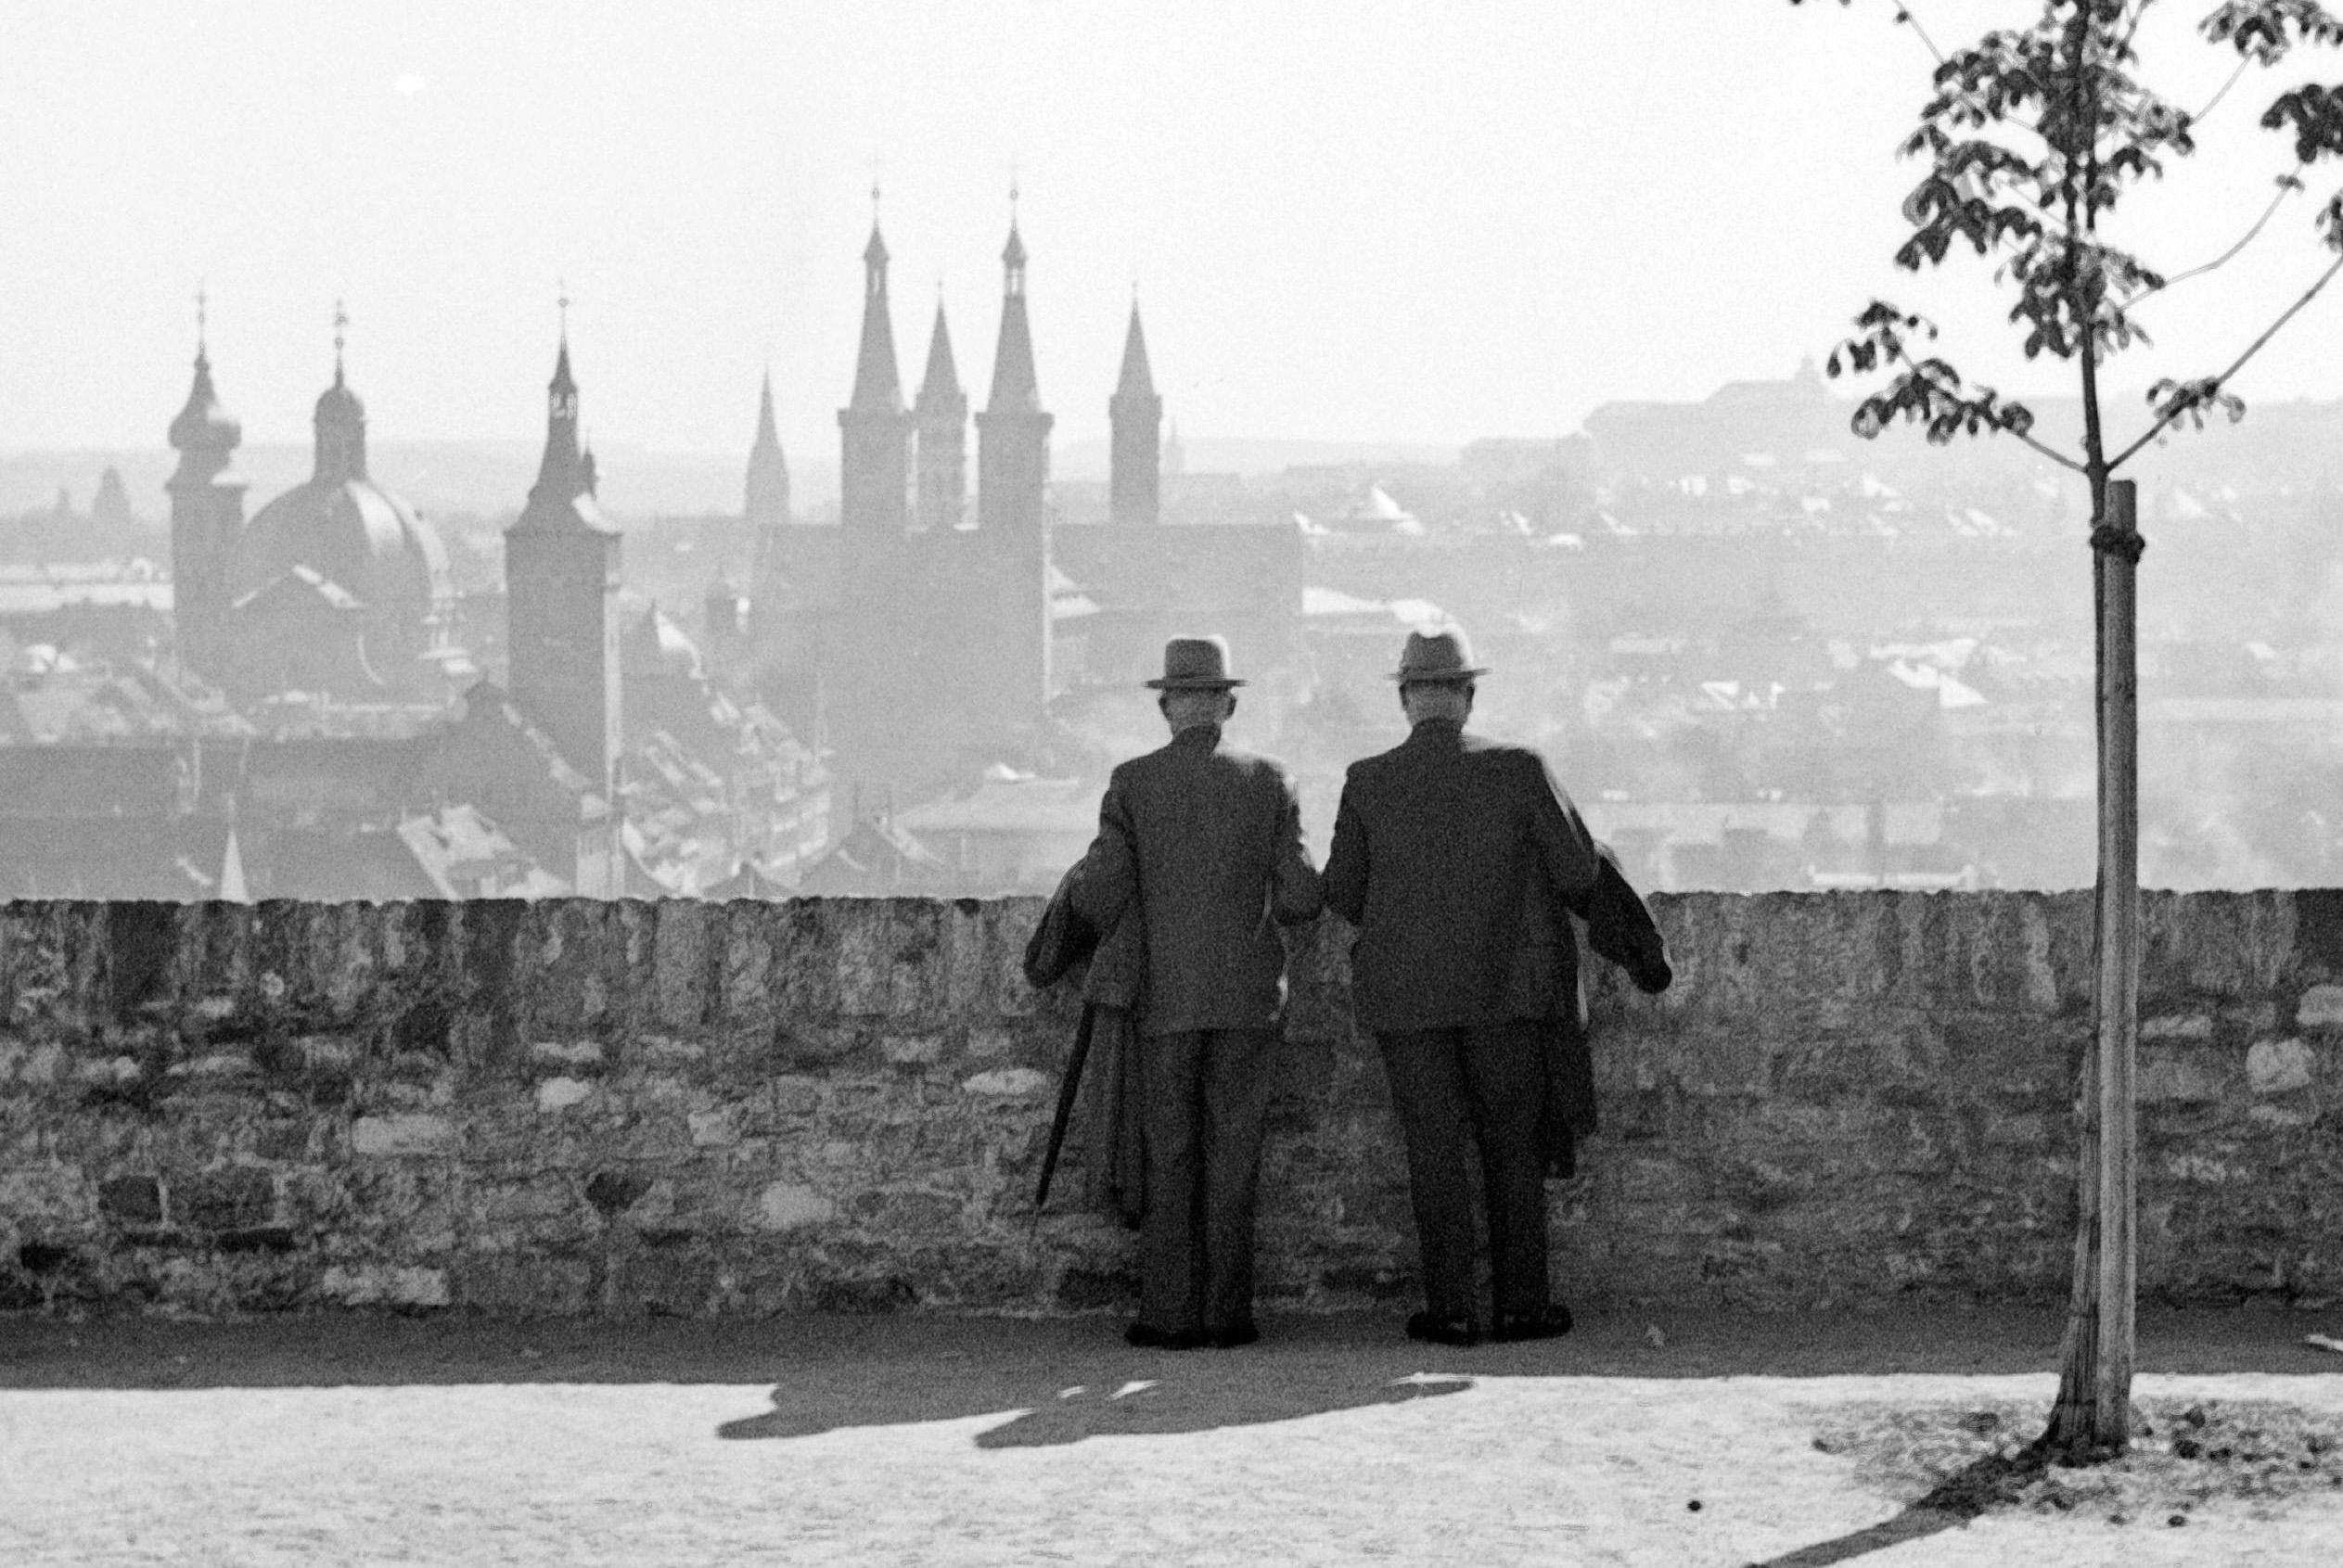 Wrzburg, Deutschland 1935, Später gedruckt – Photograph von Karl Heinrich Lämmel